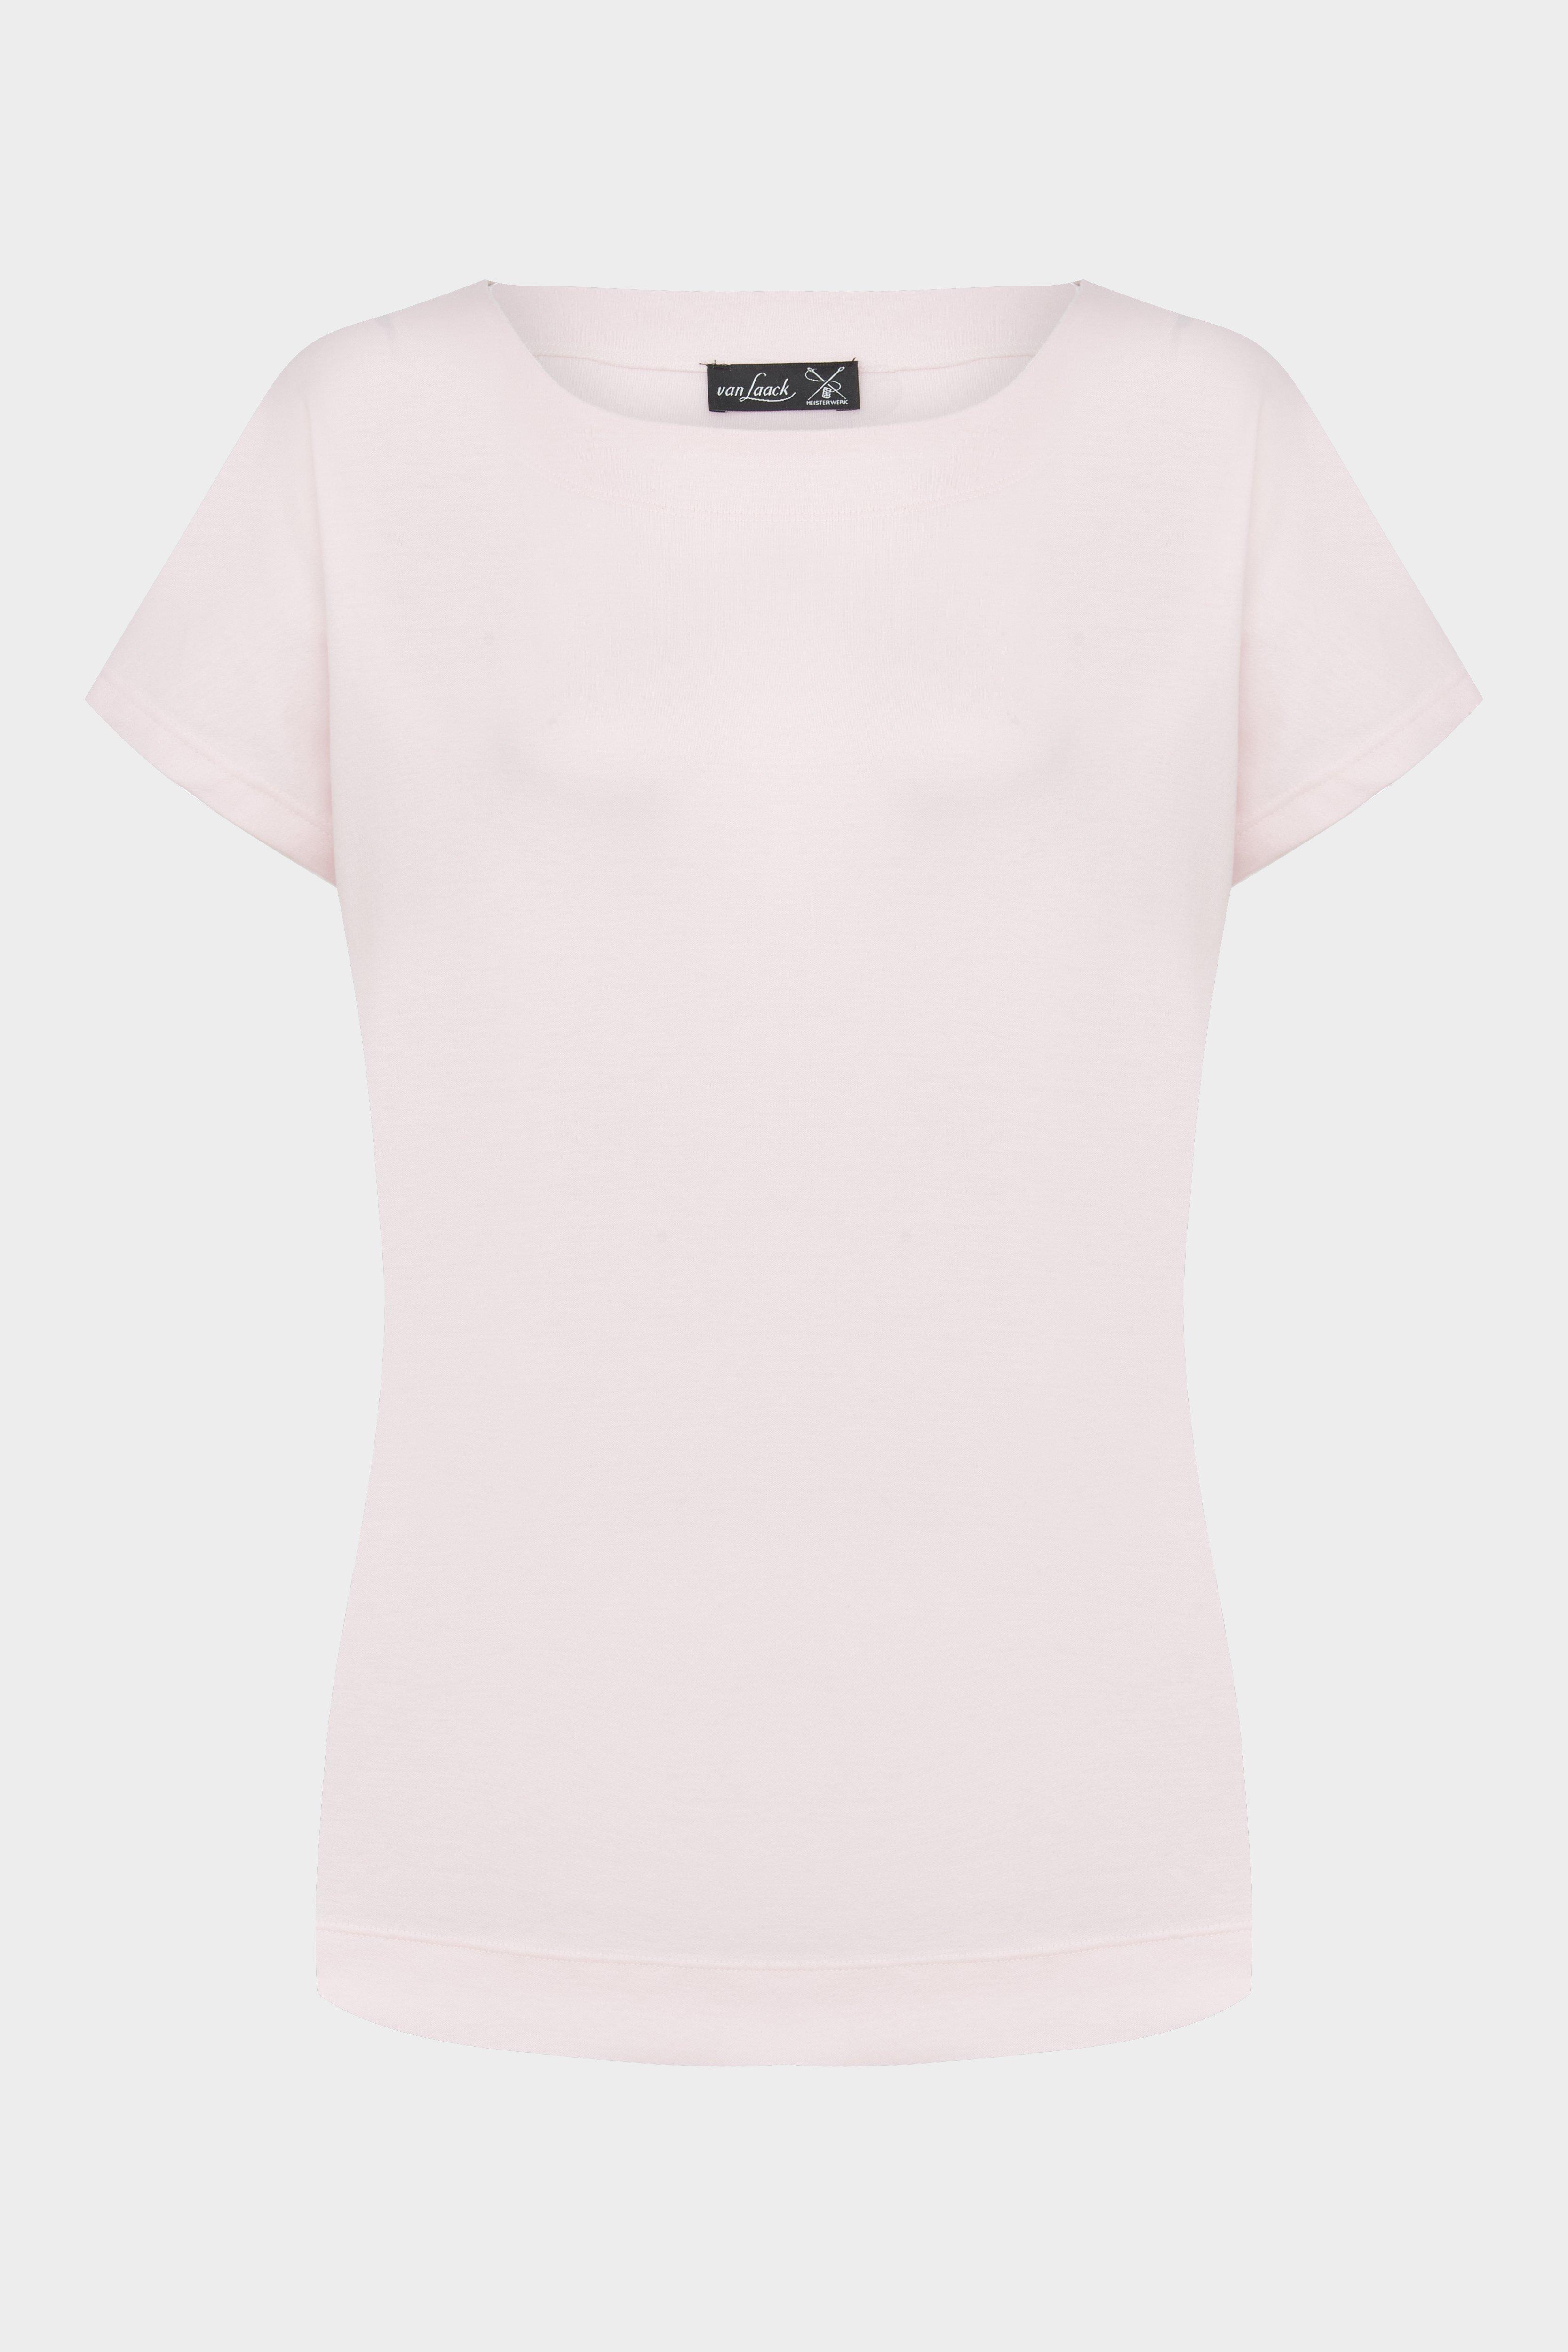 футболка MILENIS розовый MILENIS_180031_510 ,photo 1